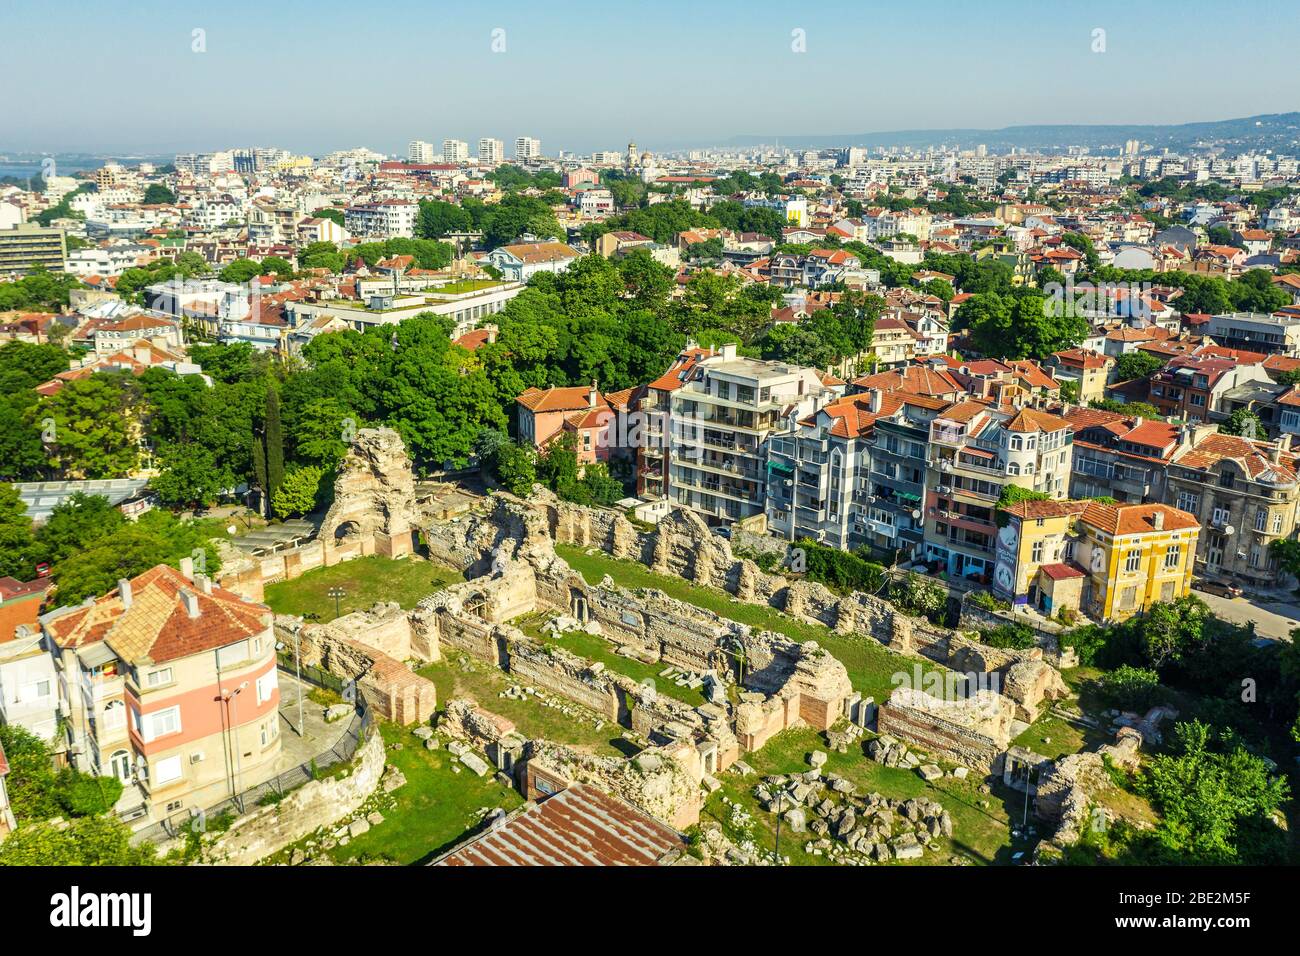 Europa, Bulgaria, Varna, vista aérea de las ruinas romanas de baños termales Foto de stock